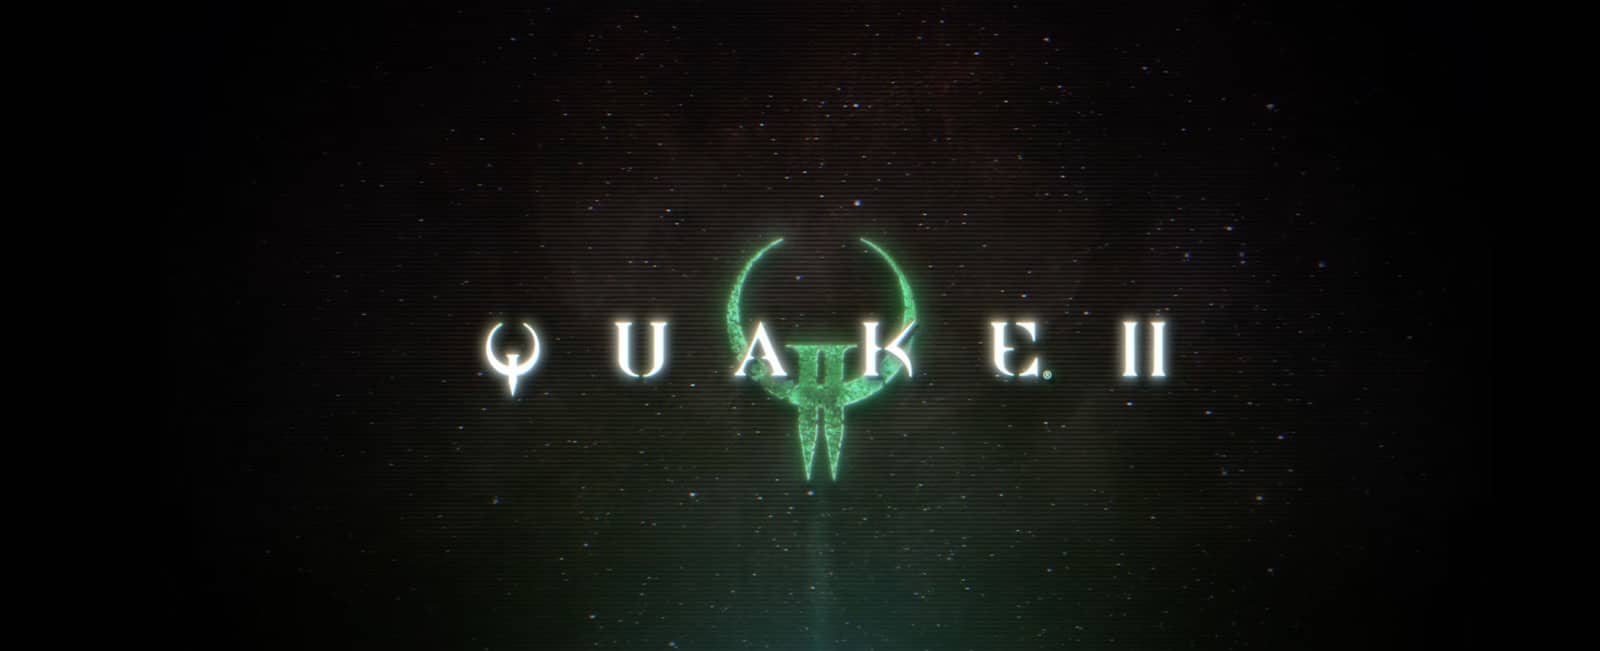 Quake 2 remaster